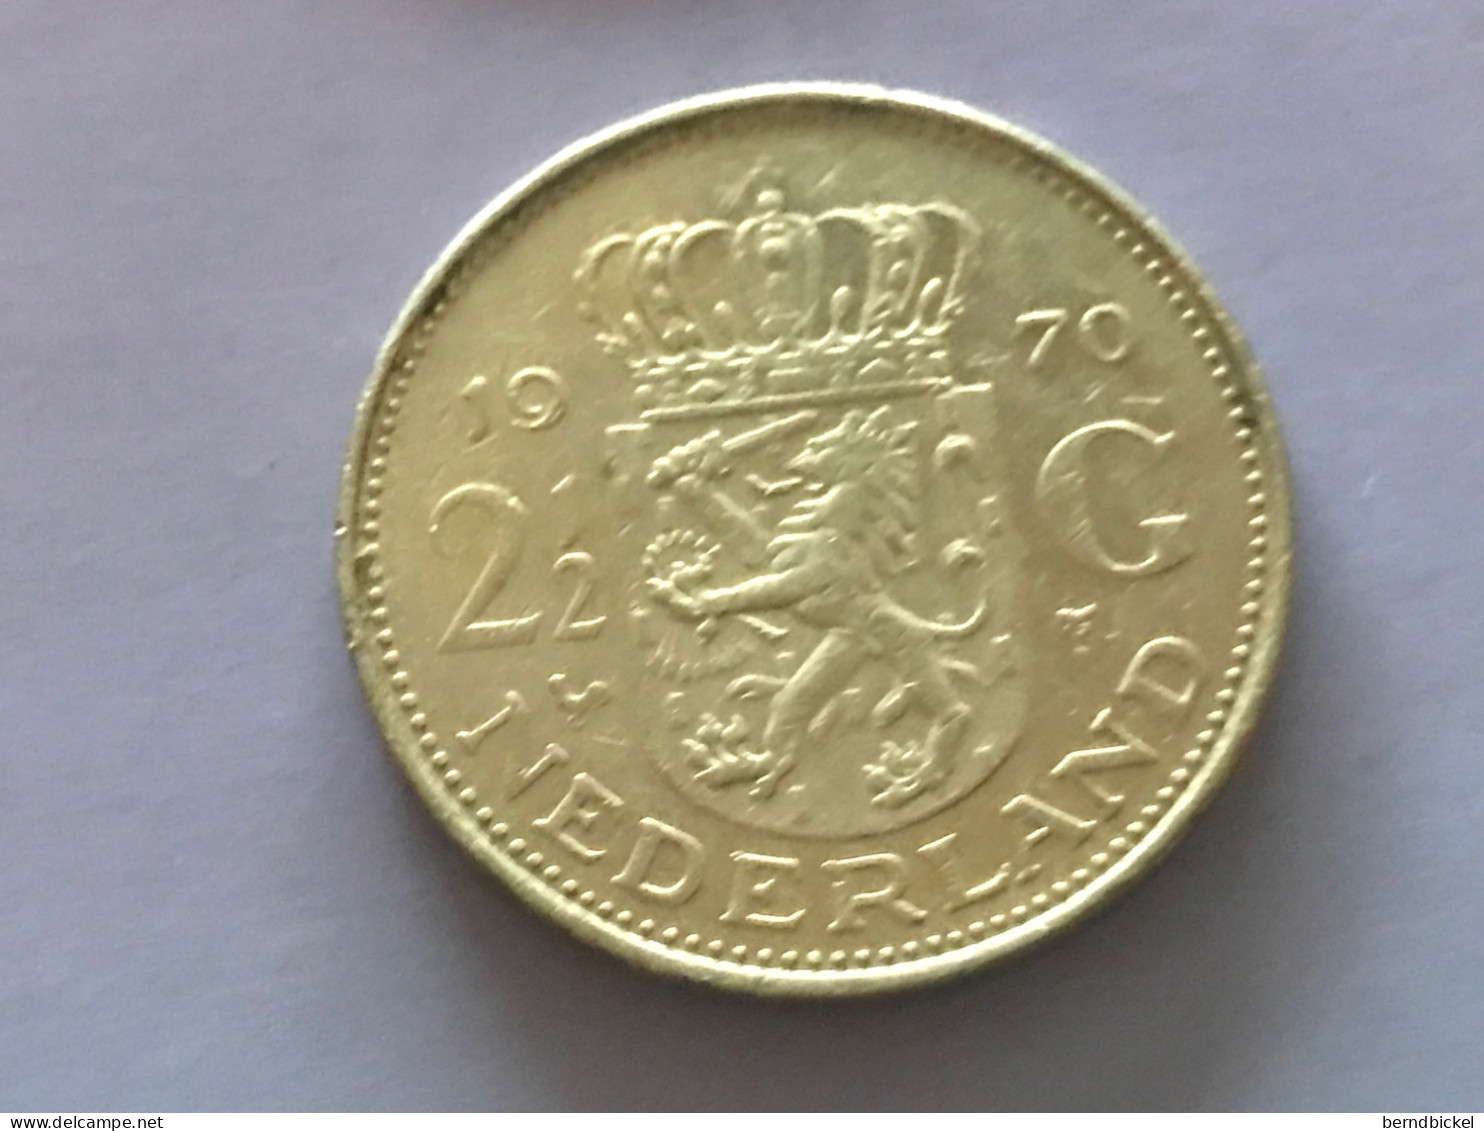 Münze Münzen Umlaufmünze Niederlande 2 1/2 Gulden 1970 - 1948-1980 : Juliana